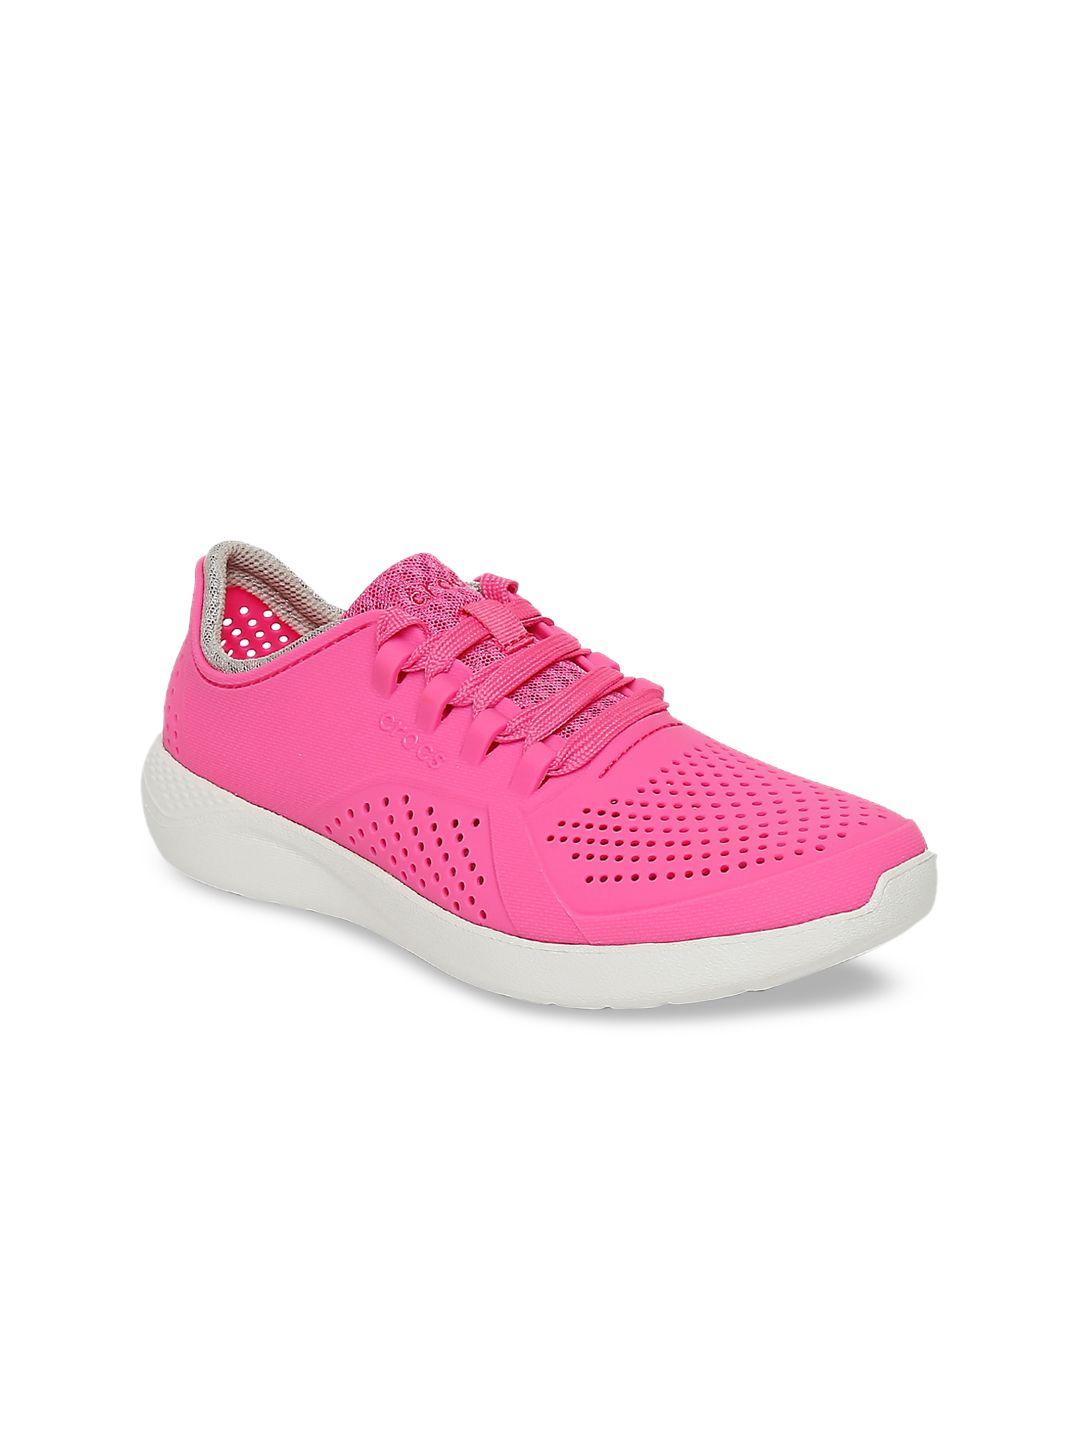 crocs-women-pink-literide-sneakers